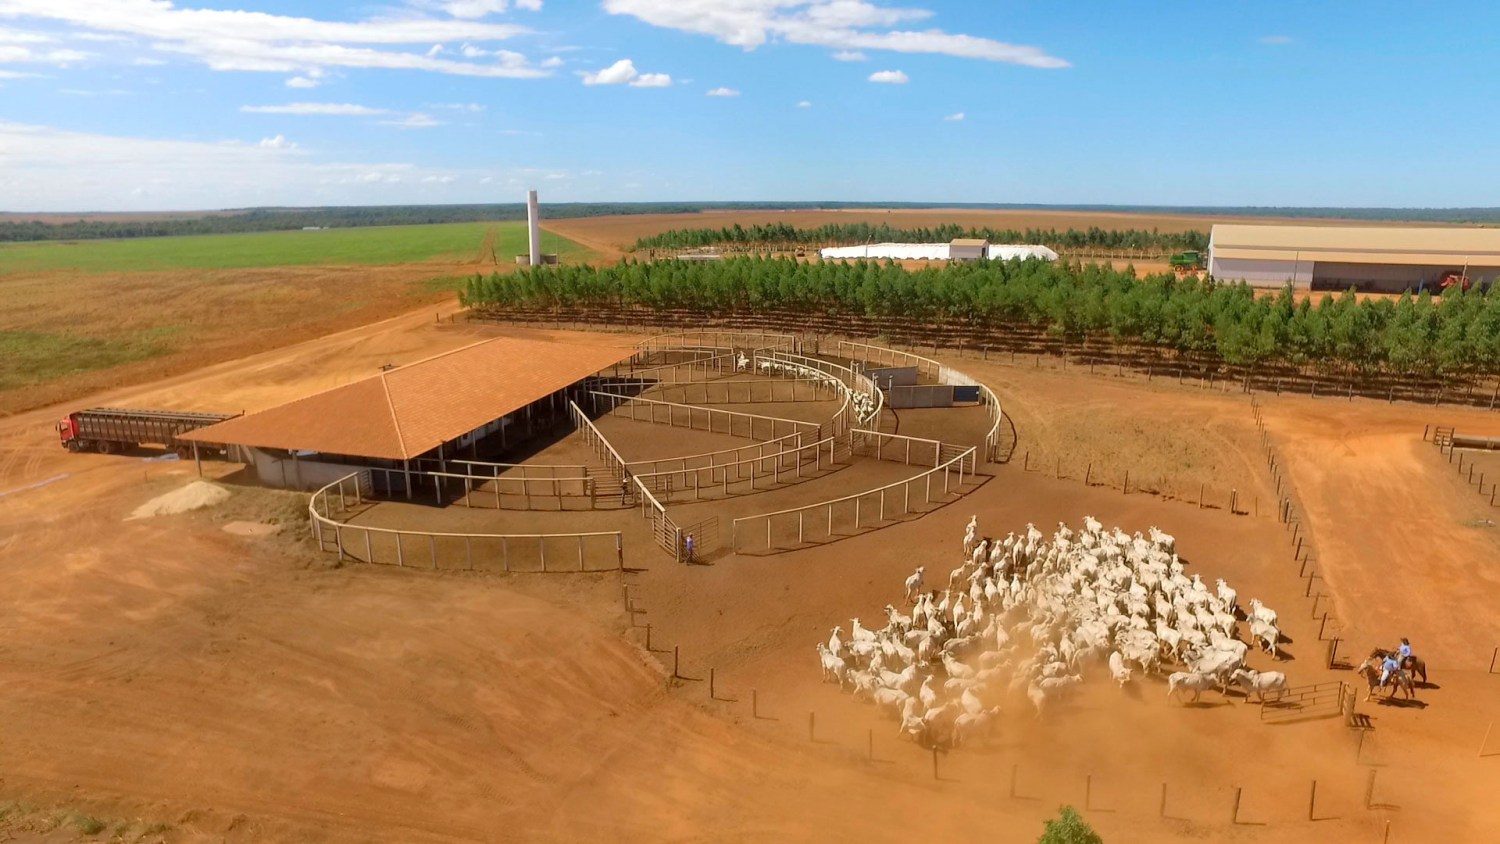 Fazenda-São-Geraldo-do-grupo-AGROJEM-abriga-um-dos-maiores-projetos-de-confinamento-de-bovinos-do-país.-